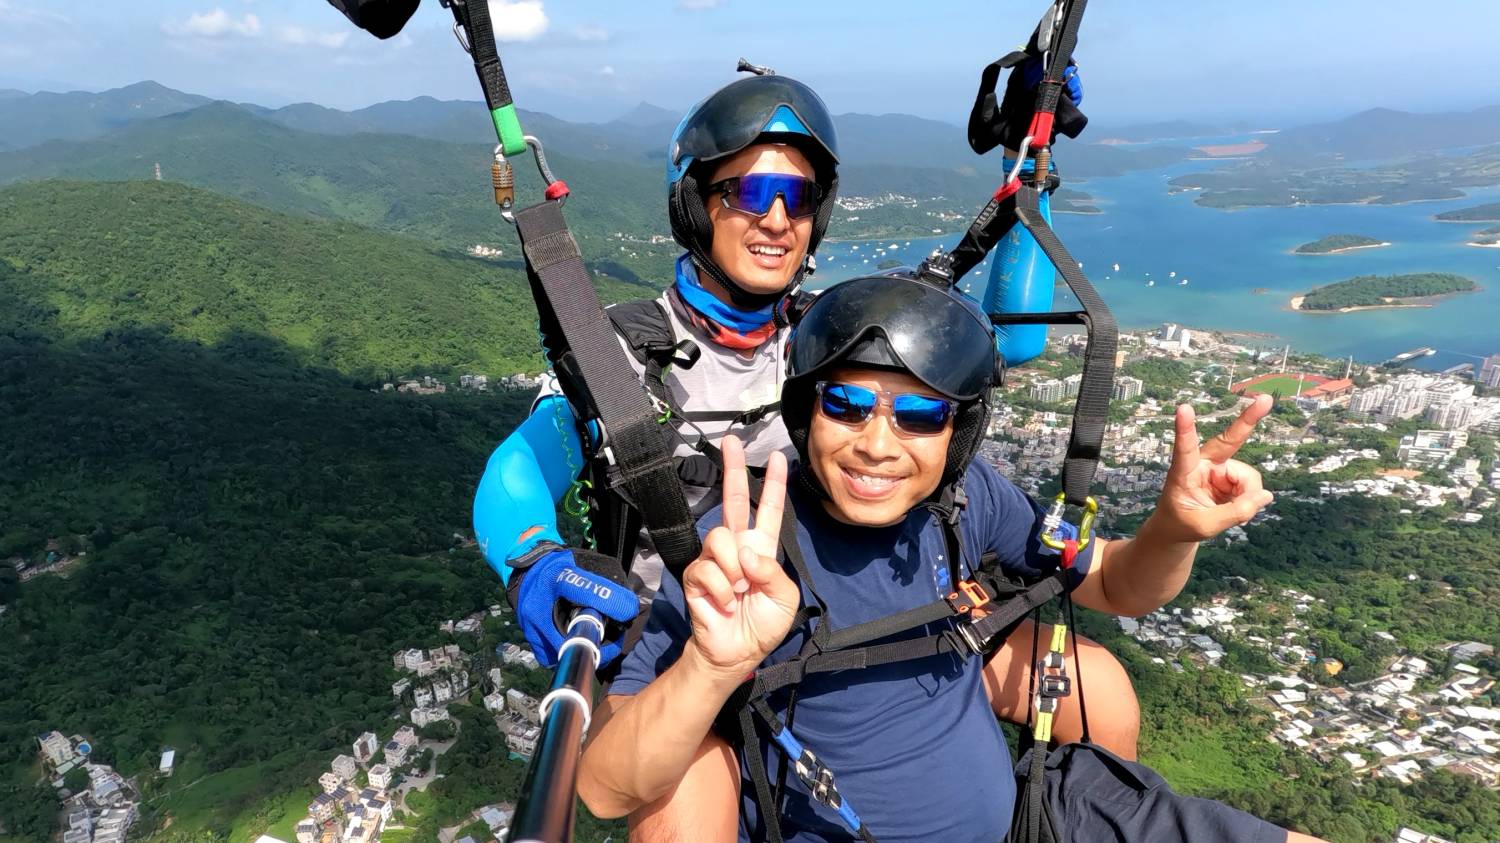 X Fly Paragliding 【特別體驗之選】香港滑翔傘體驗飛行 Tandem paragliding experience trial 13